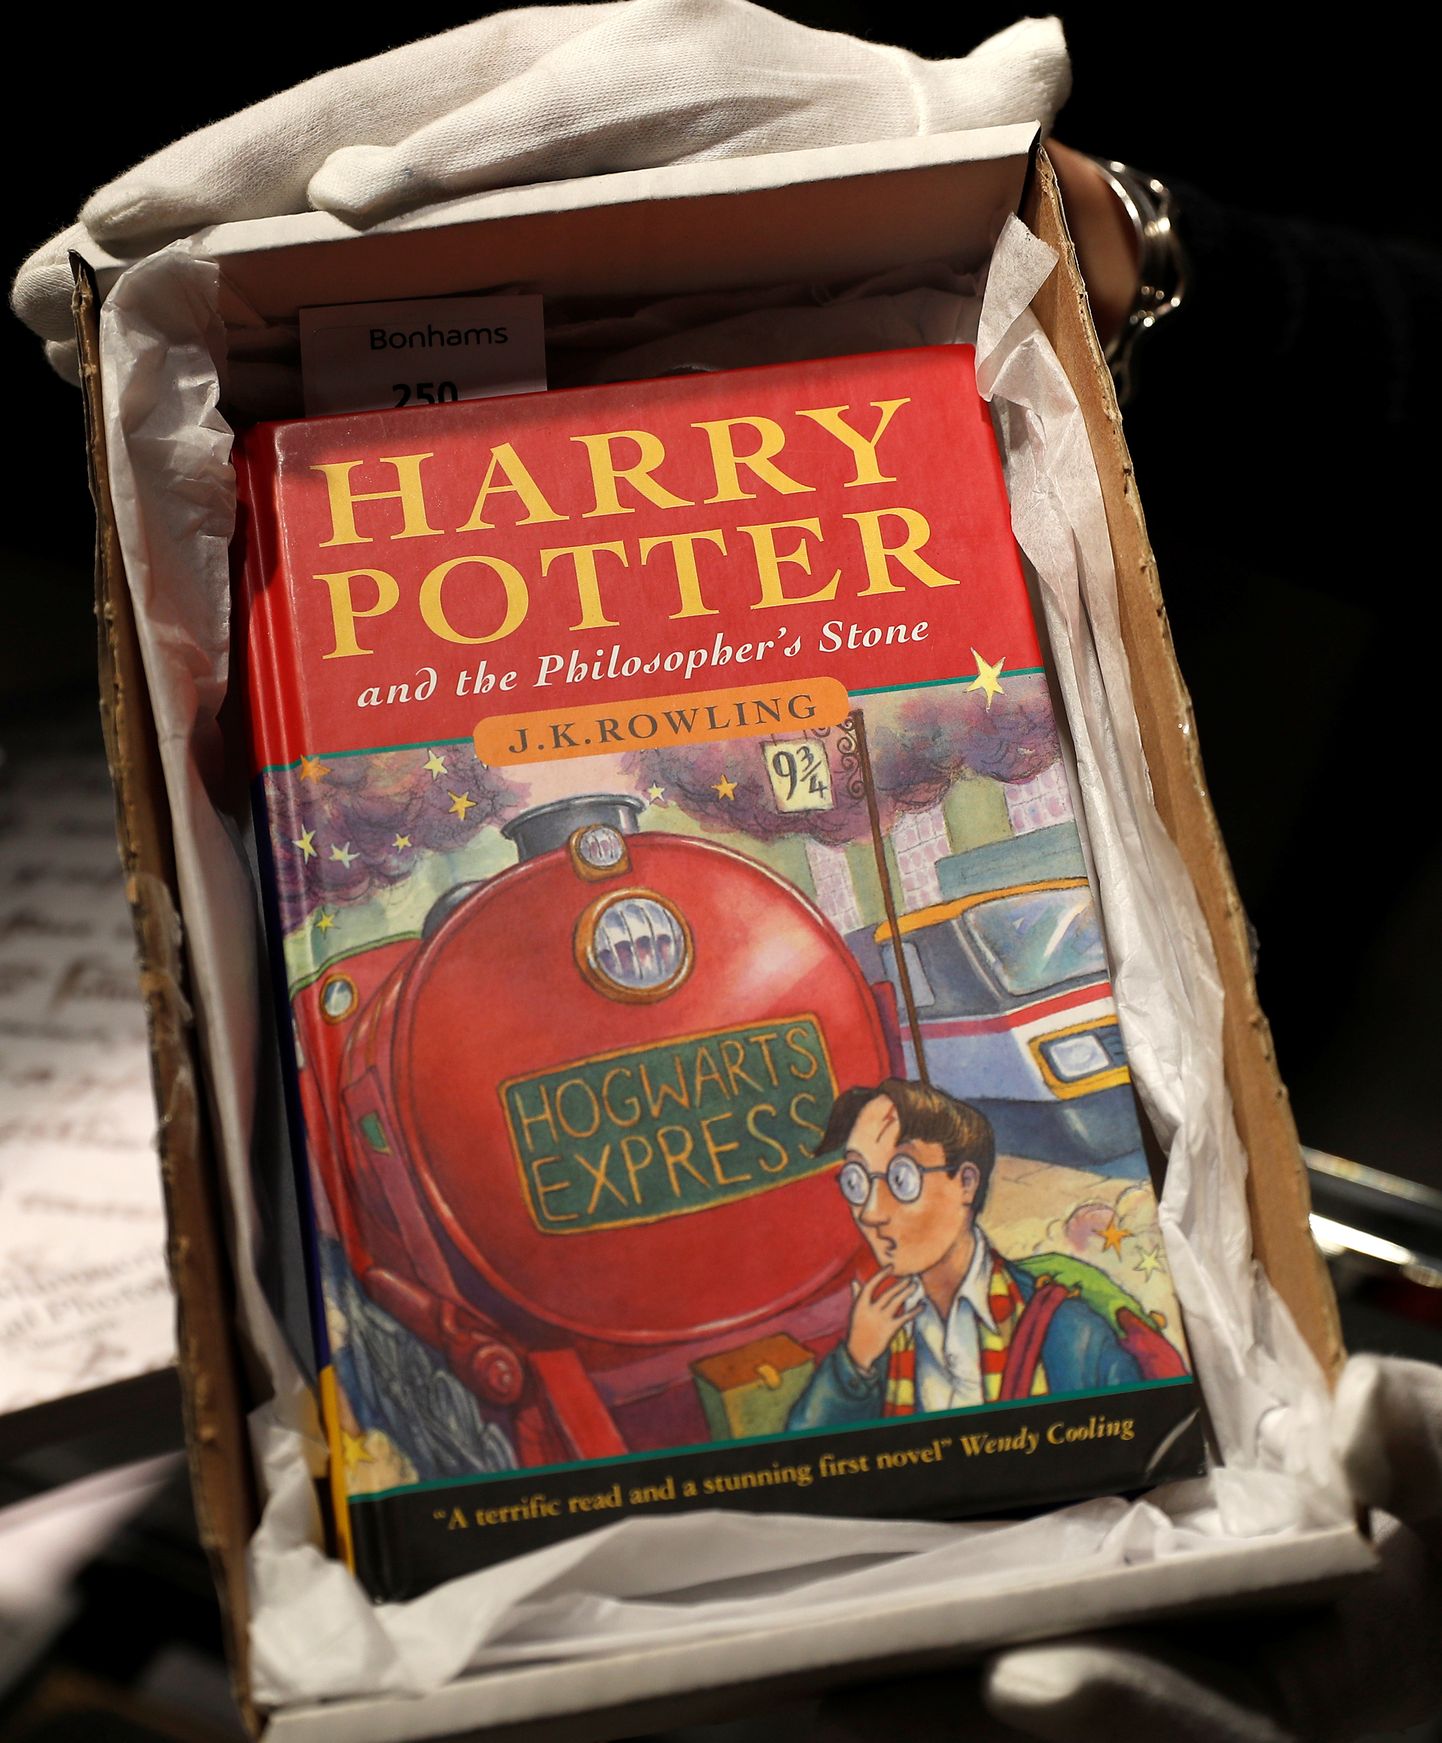 Grāmata "Harijs Poters un Filozofu akmens" izdevums angļu valodā.